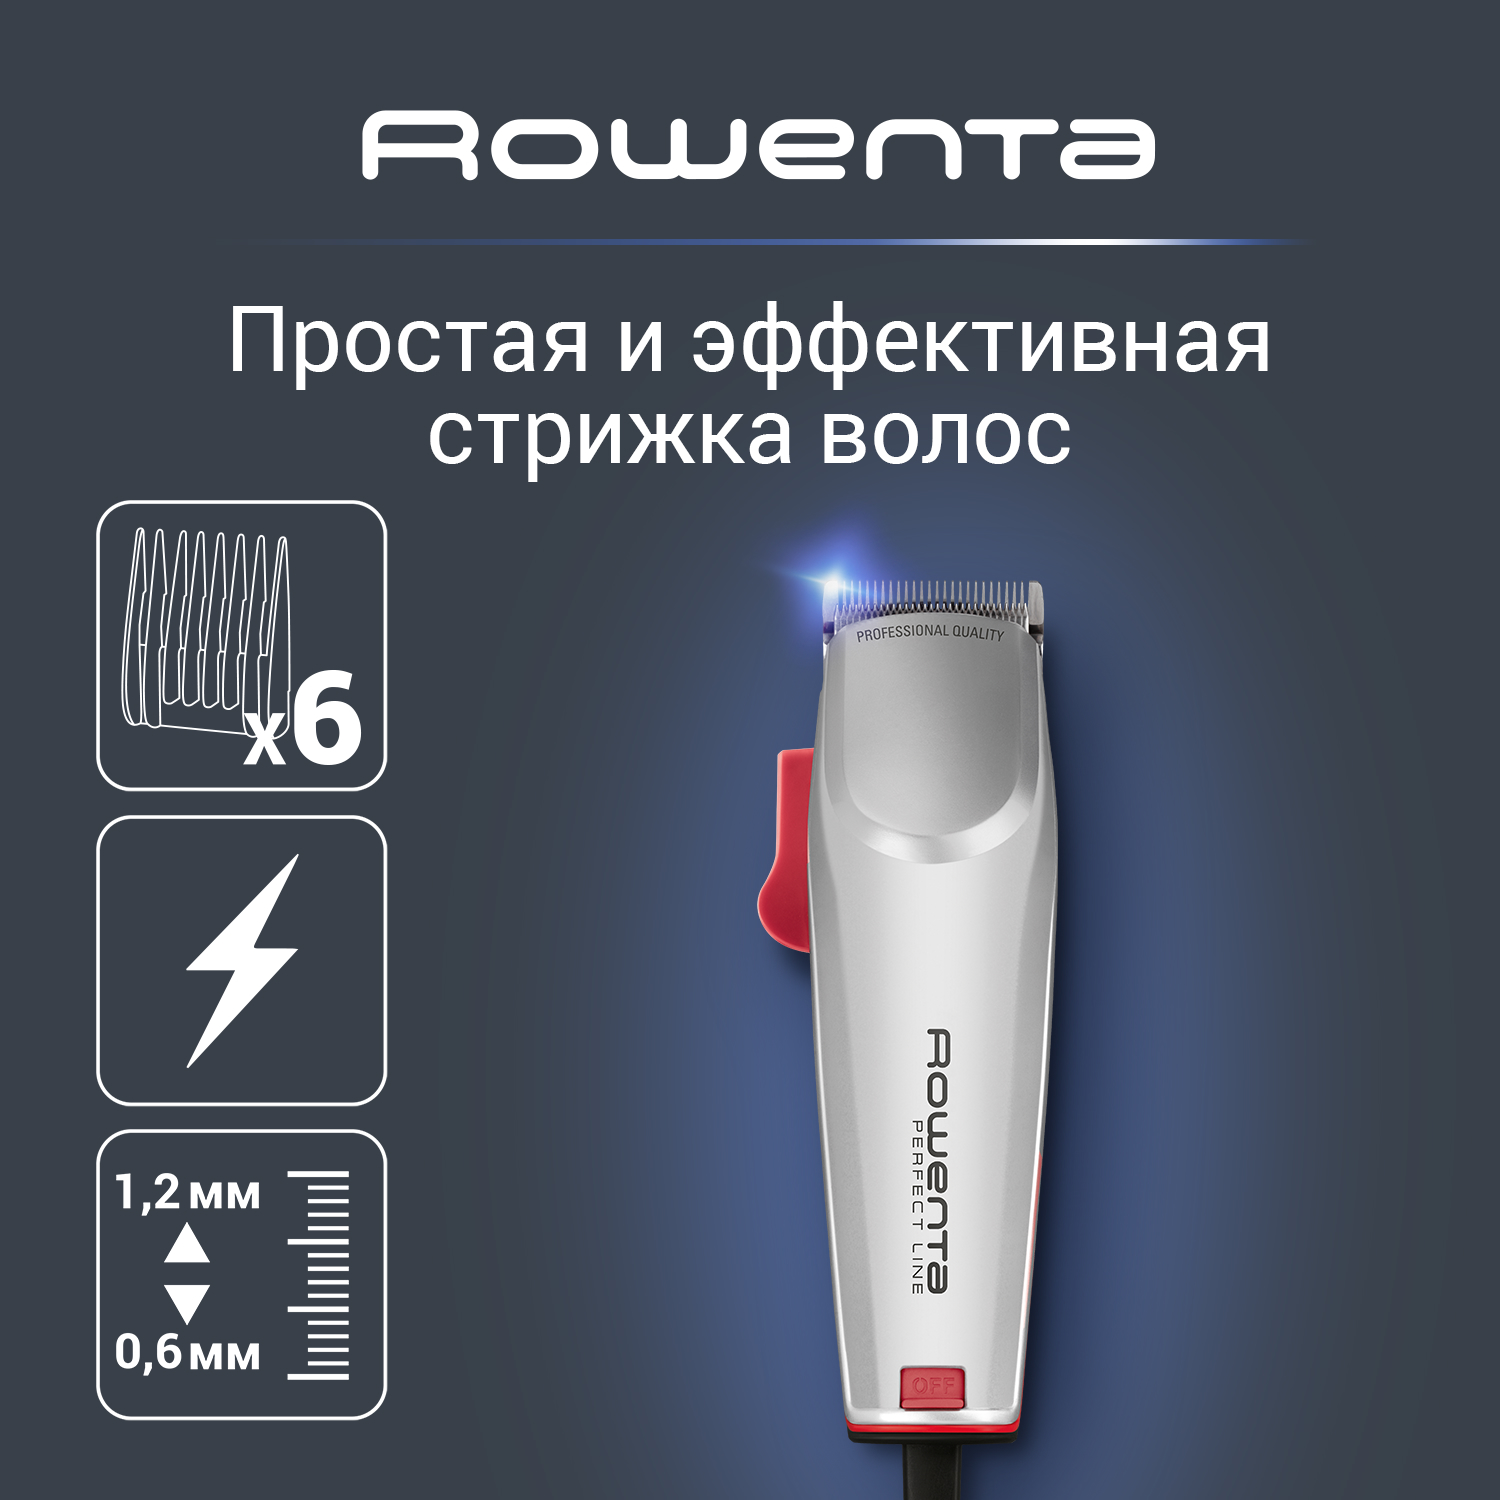 Машинка для стрижки волос Rowenta Perfect Line TN1300F0, серый машинка для стрижки волос rowenta perfect line tn1300f0 серый